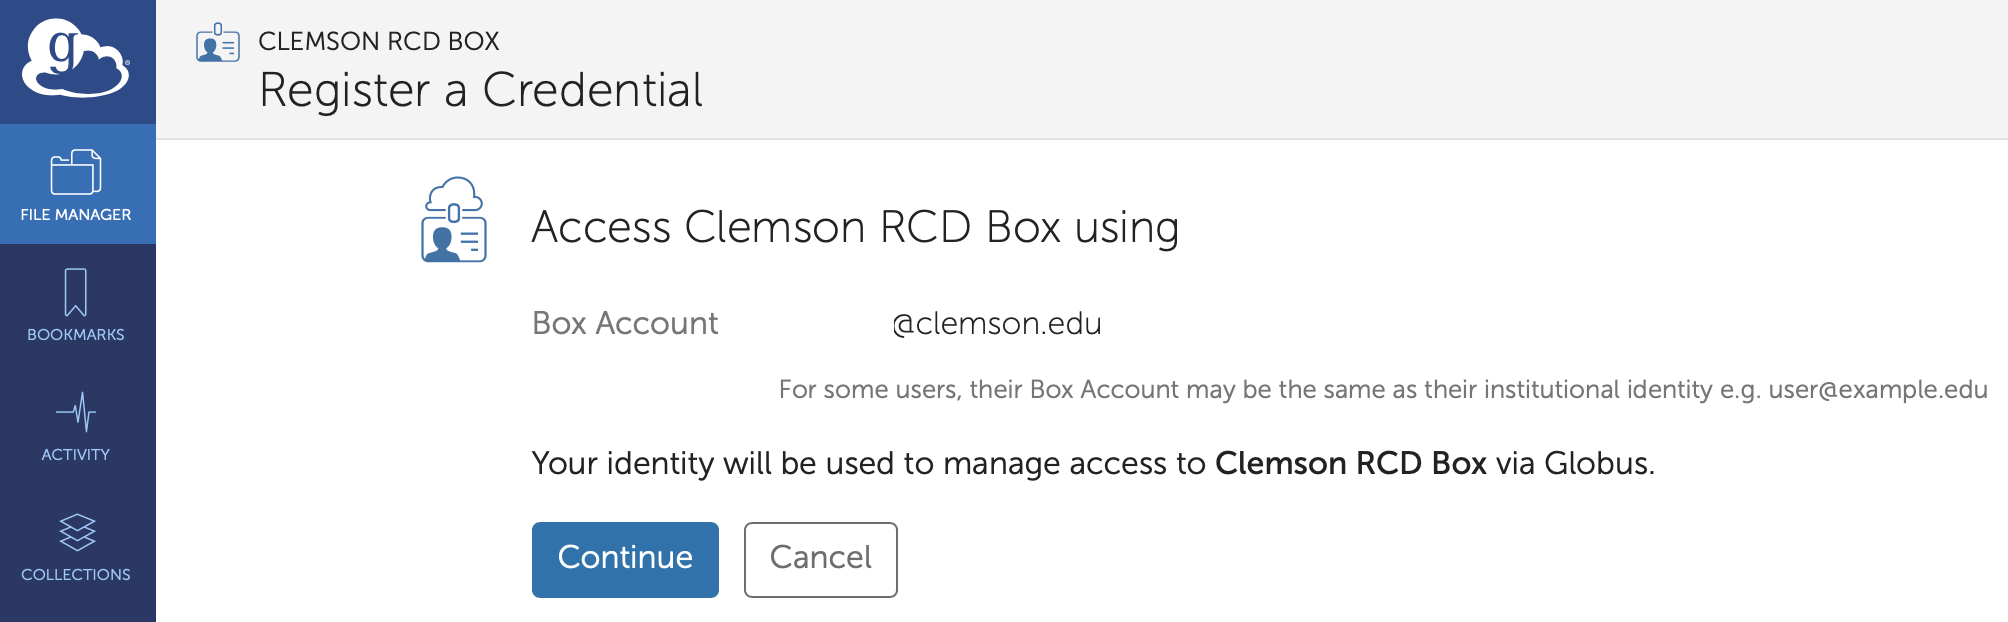 Clemson RCD Box Authentication Registration